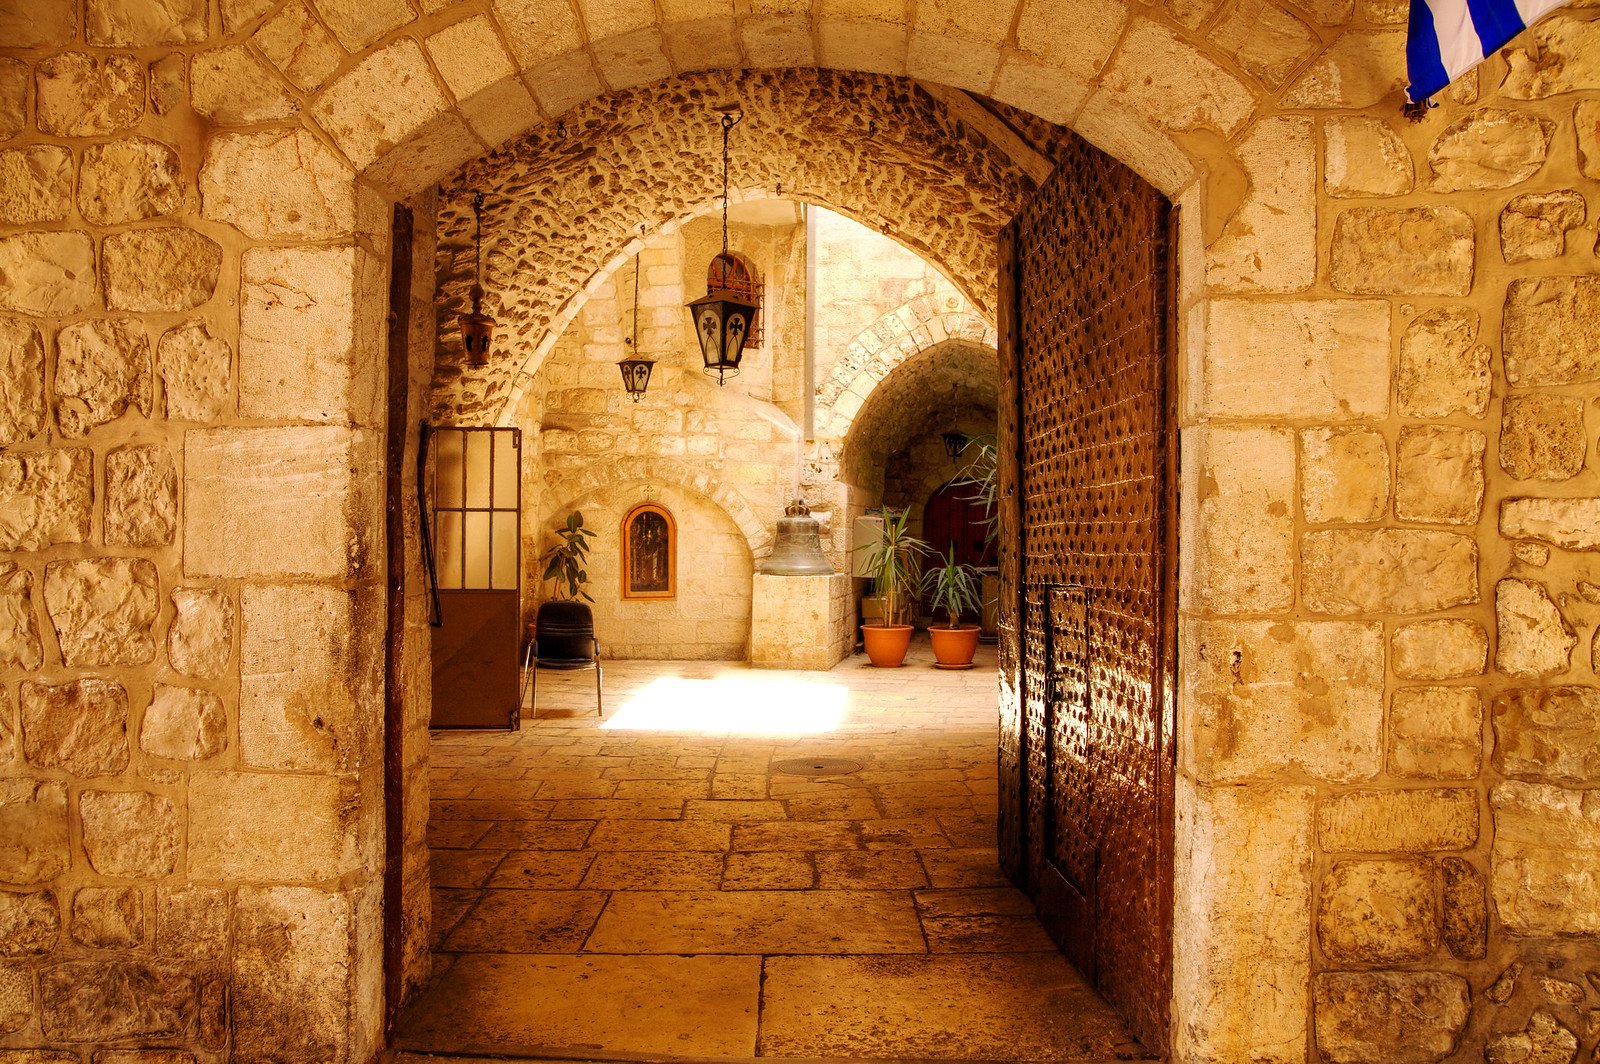 דירות משופצות למכירה בעיר העתיקה בירושלים